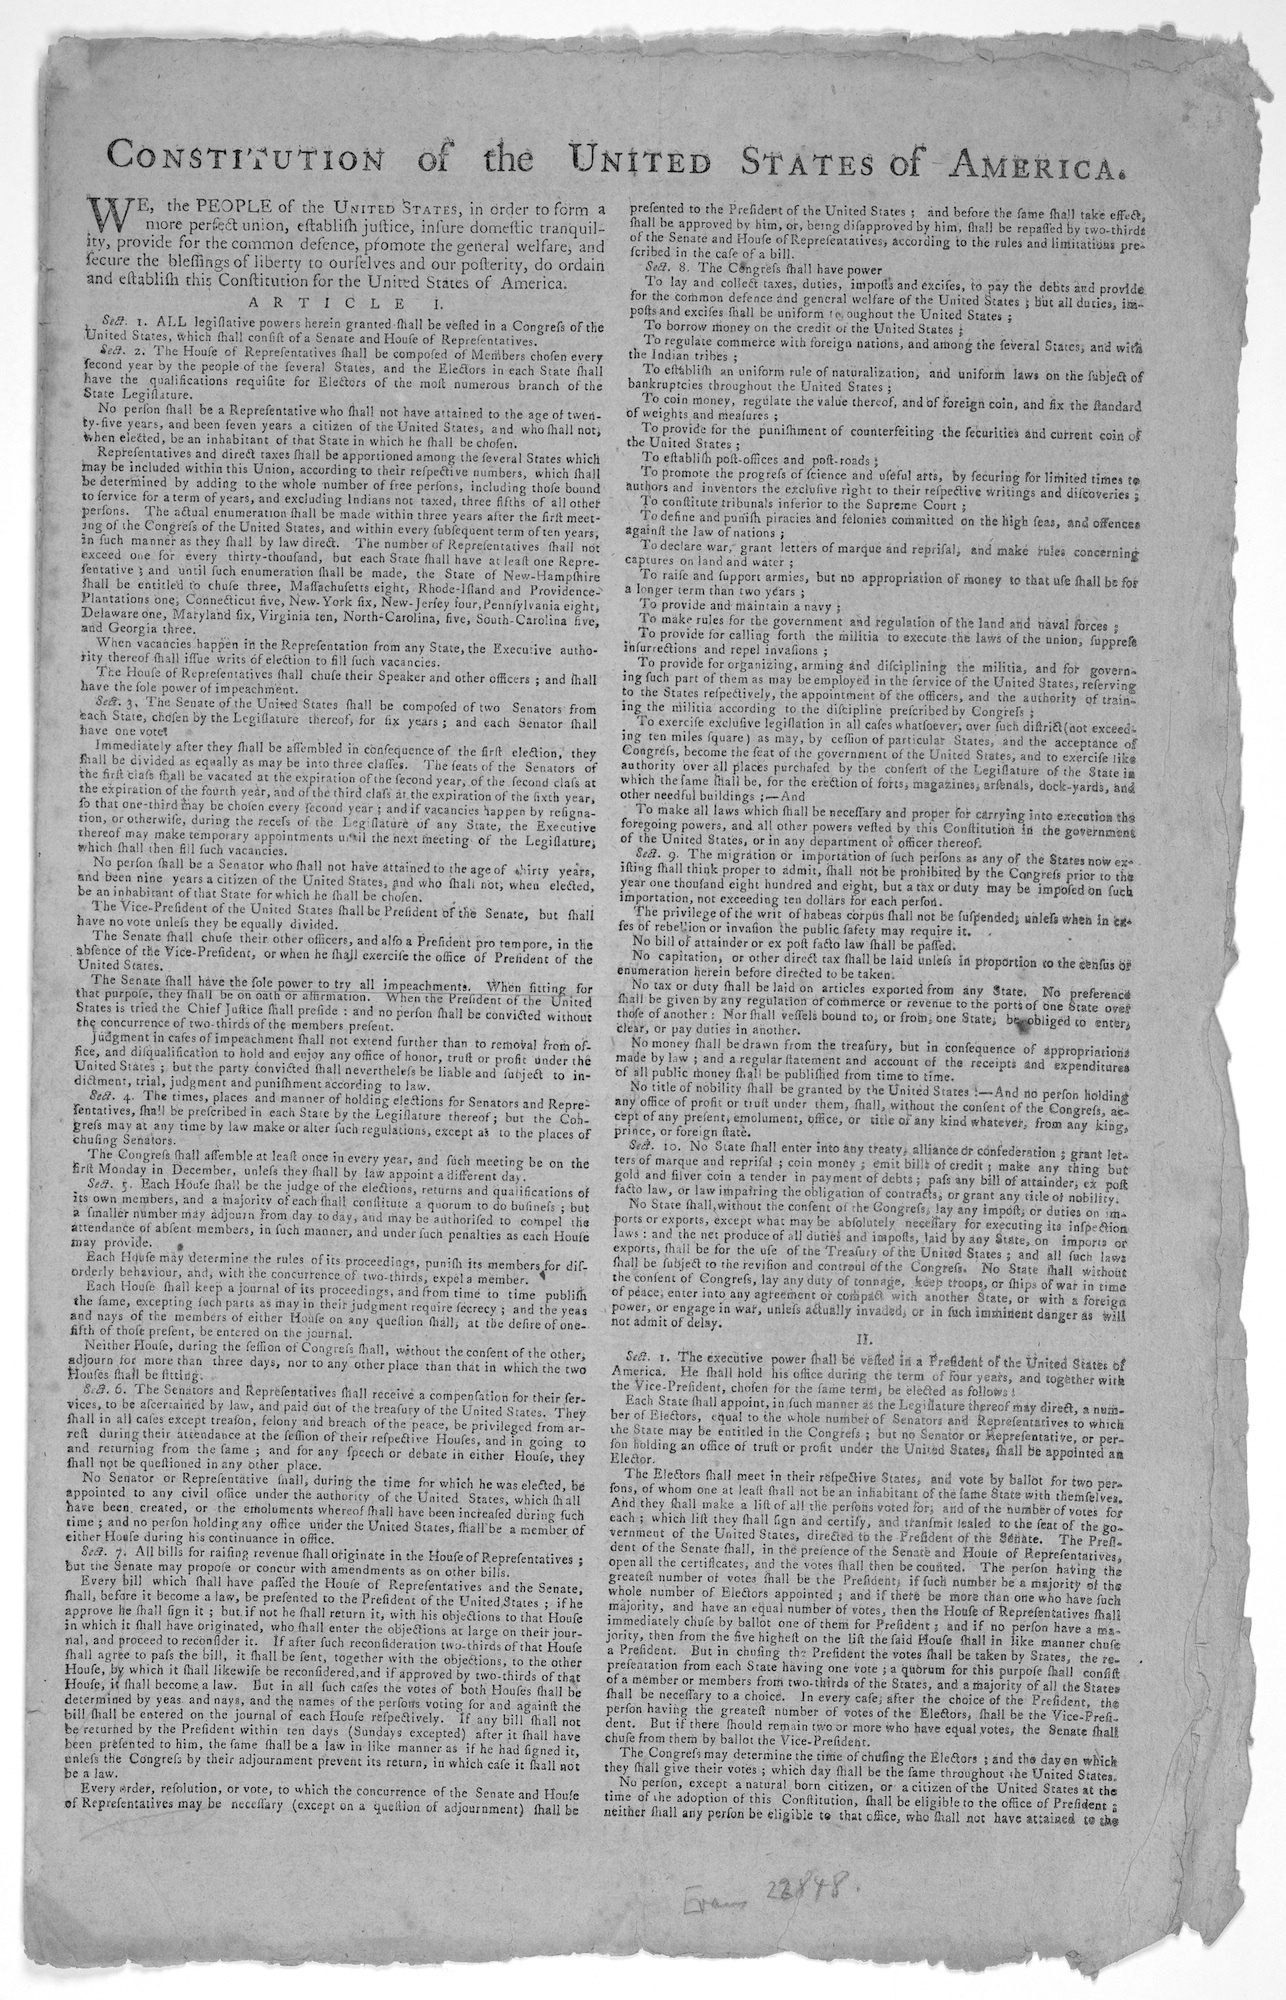 Article I of U.S. Constitution